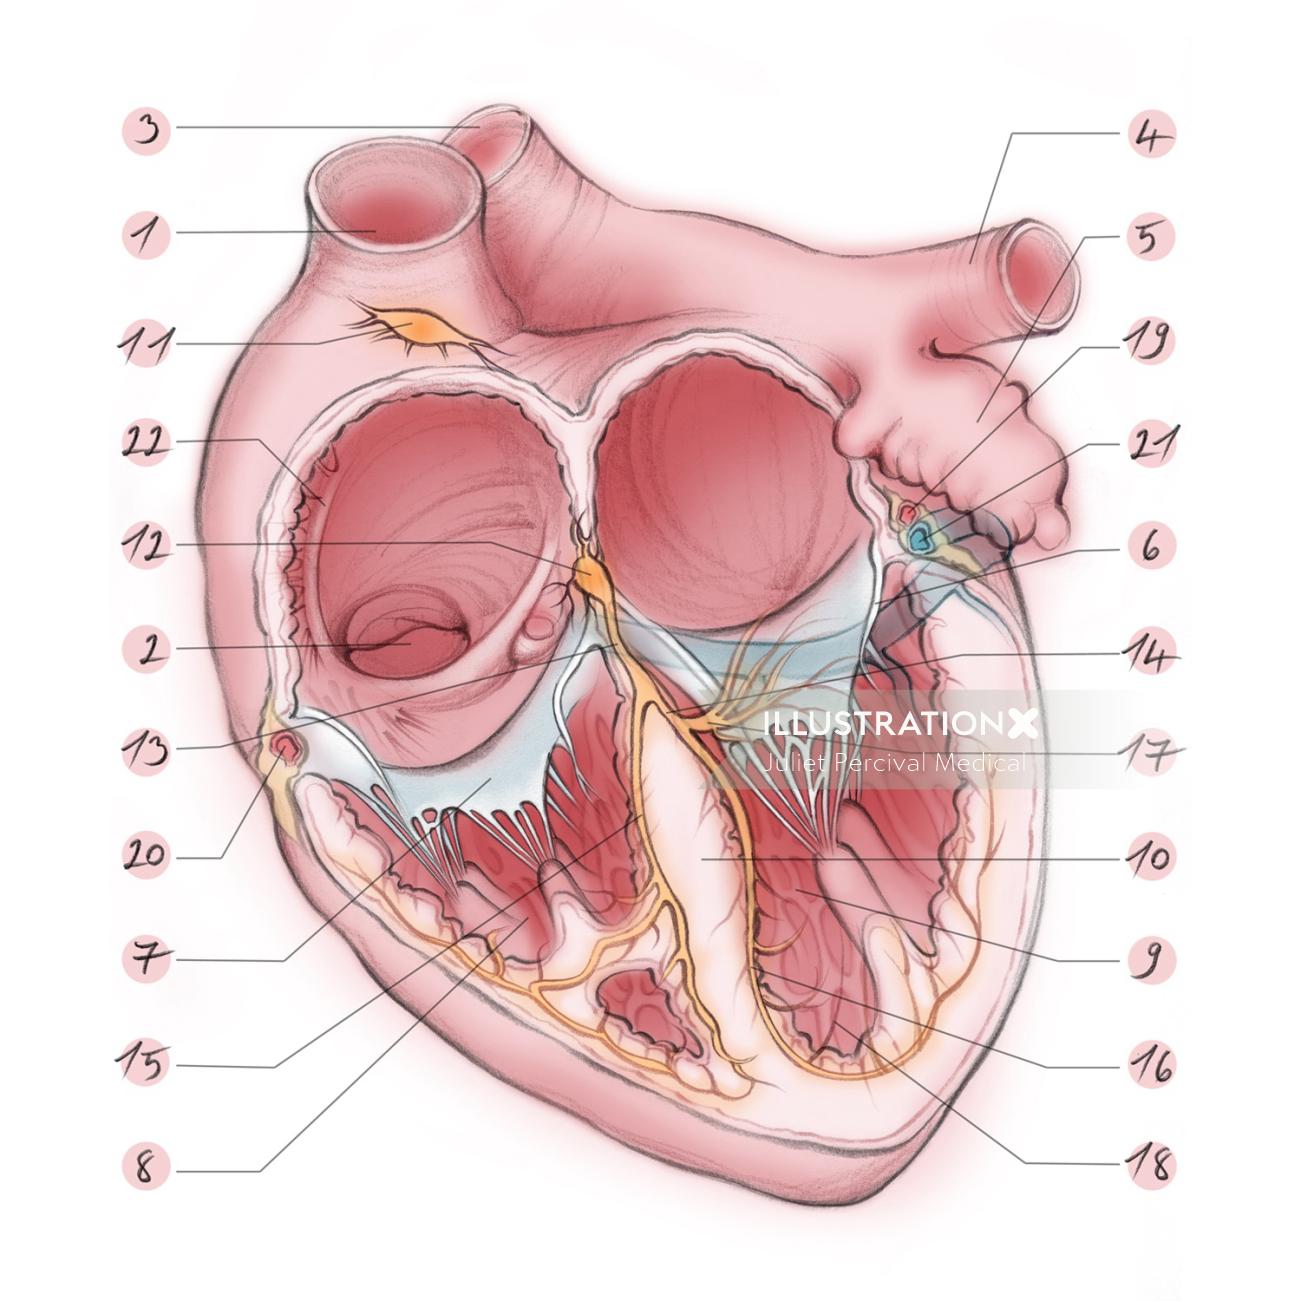 心臓、心房、心室、大動脈、付属肢、僧帽弁、三尖弁、解剖学